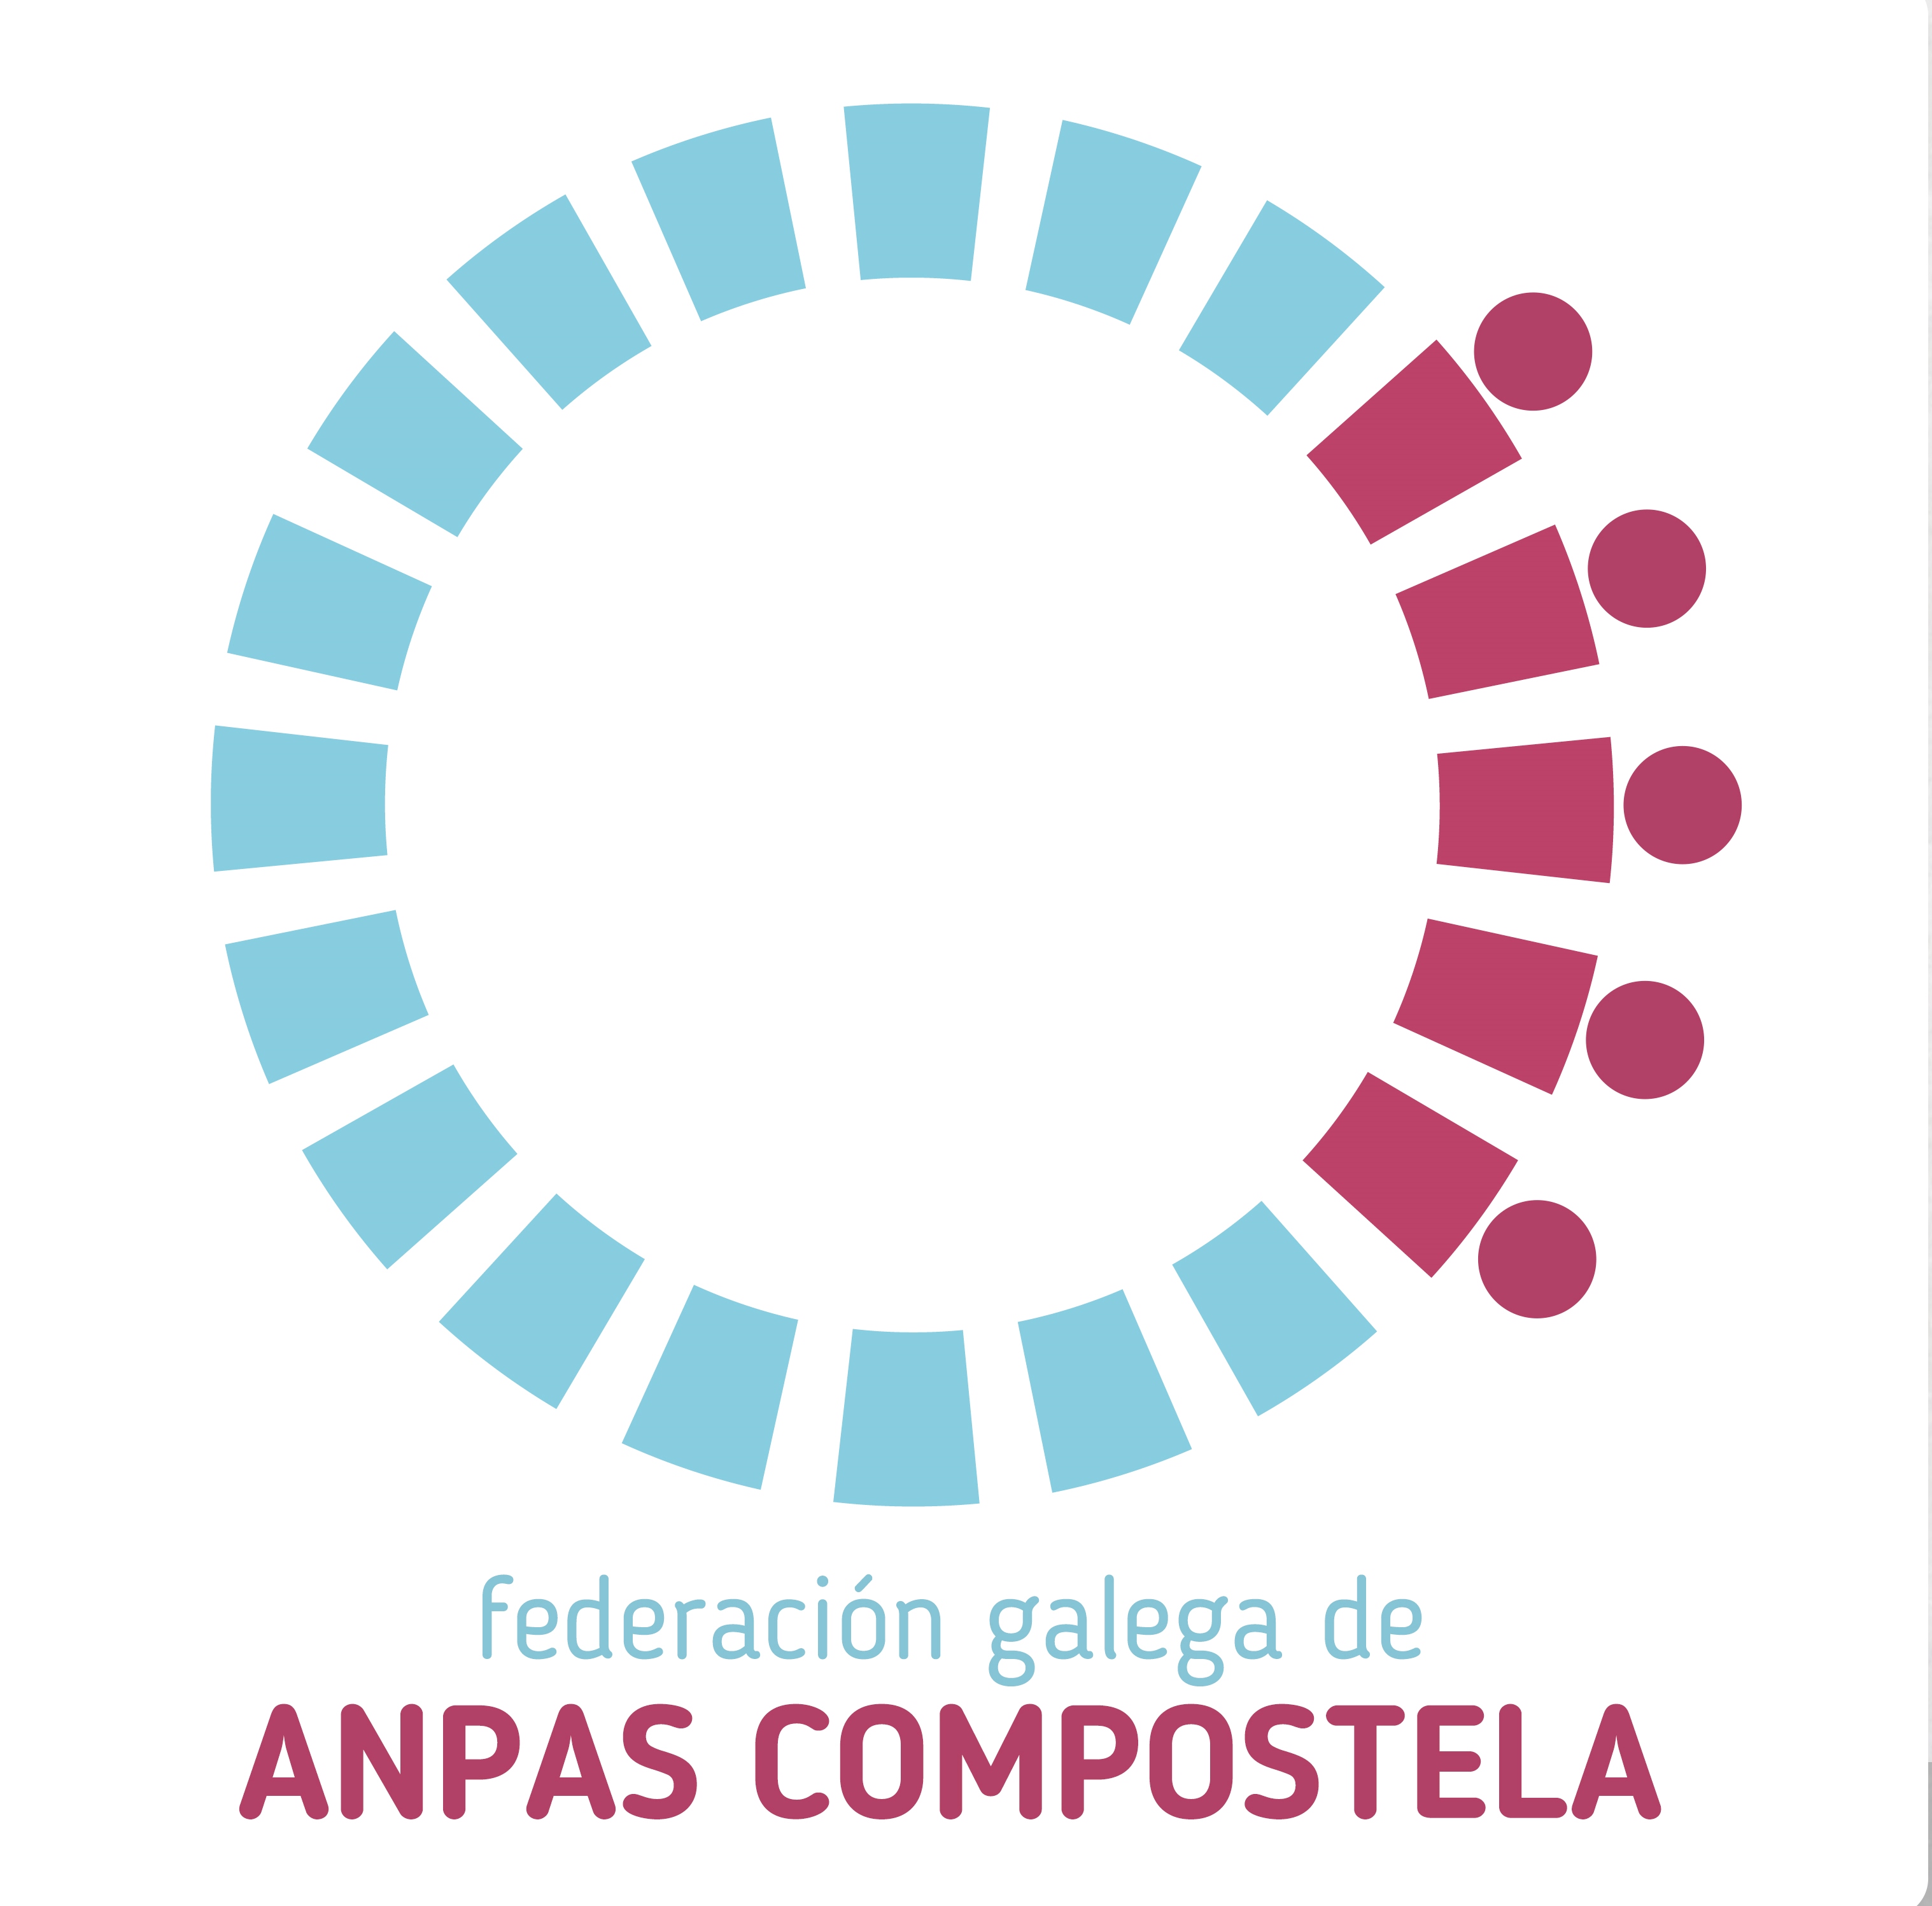 01_anpas-compostela_logo-recortado-1